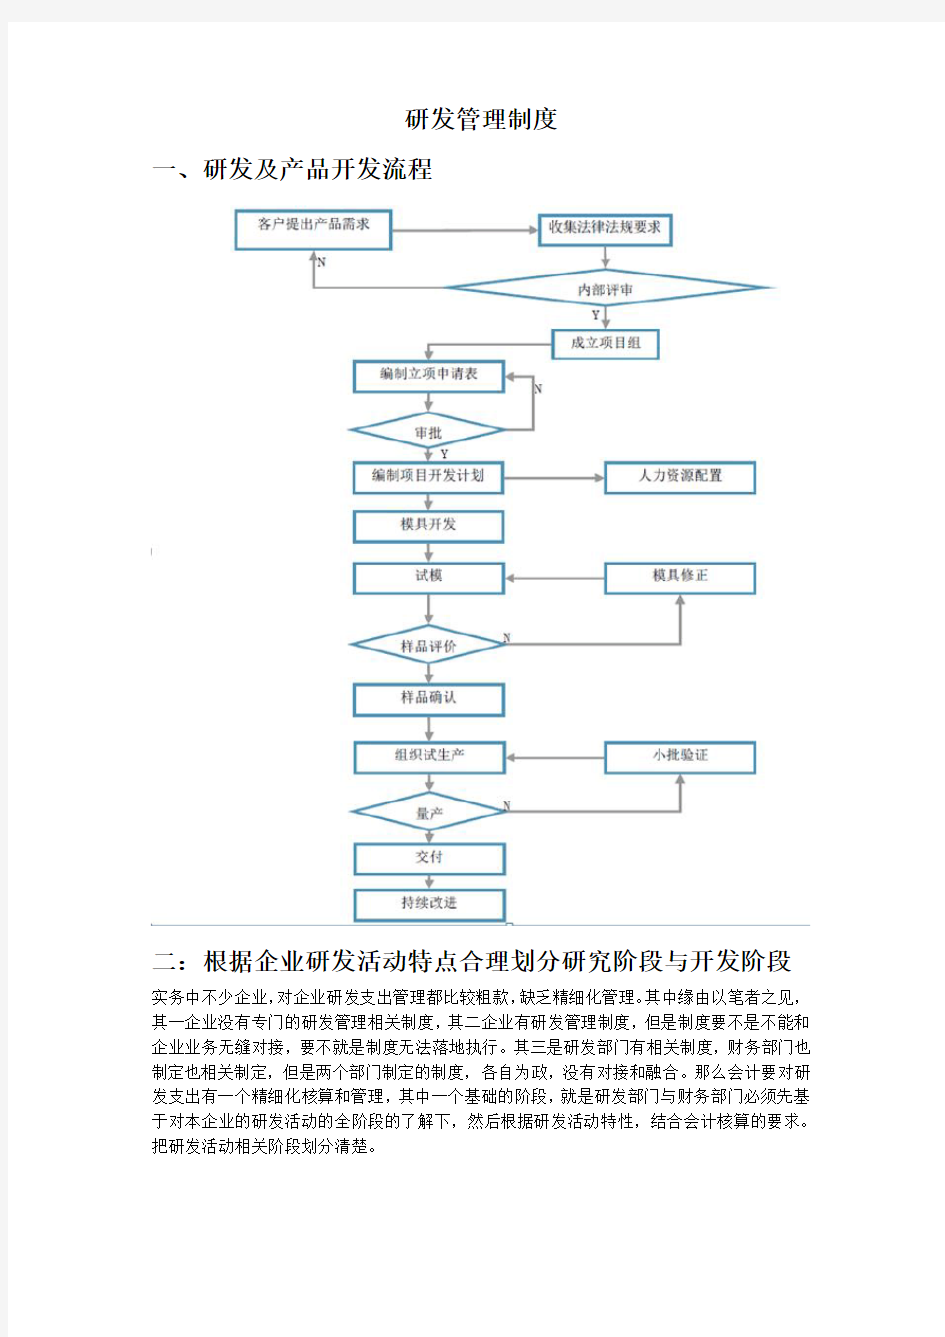 研发管理制度(含流程图)